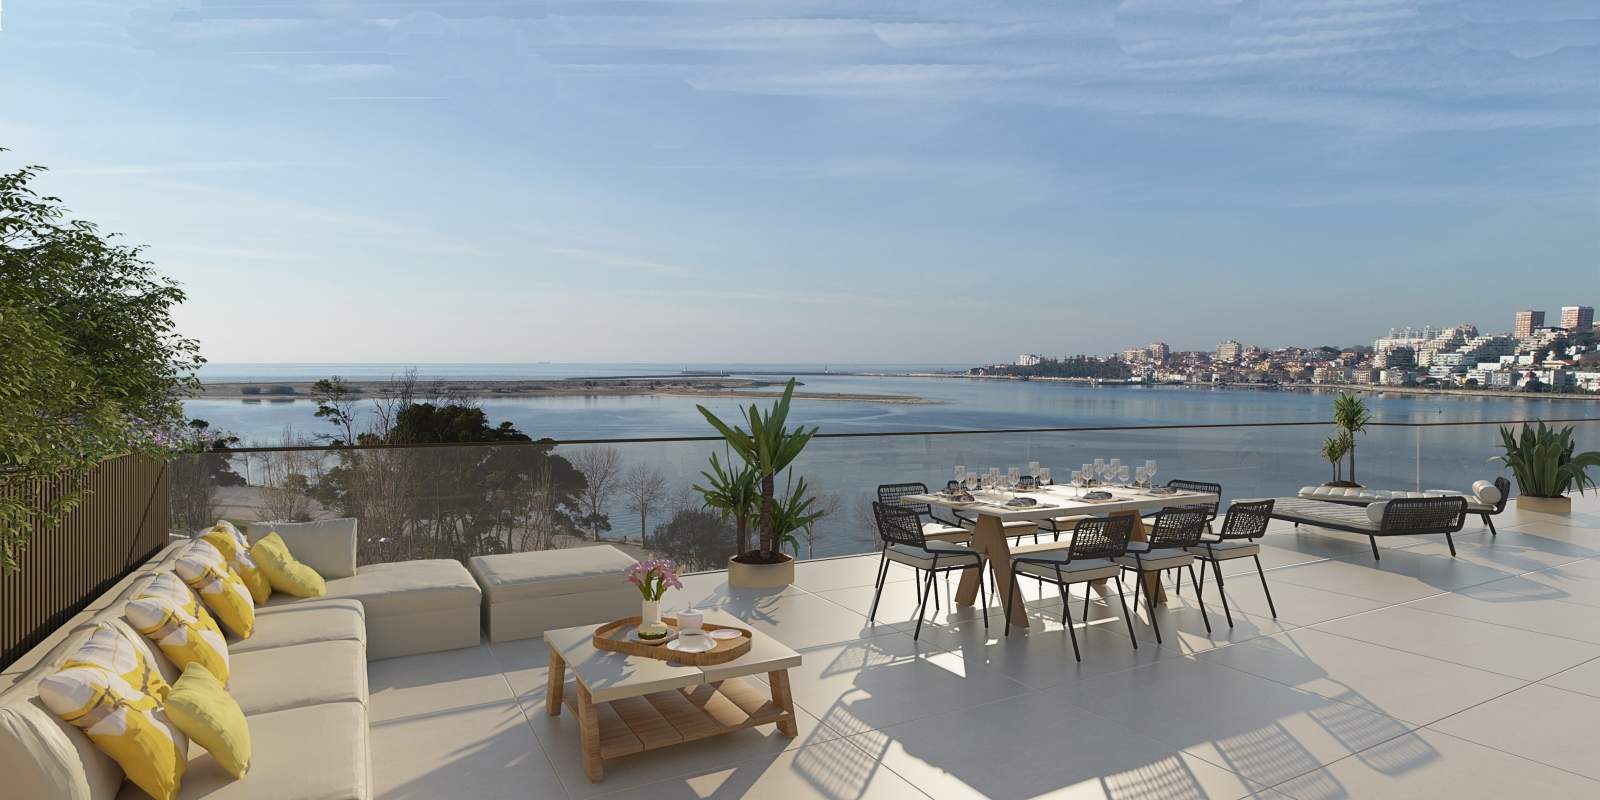 Piso en venta con terraza, en exclusivo condominio, V. N. Gaia, Porto, Portugal_175766